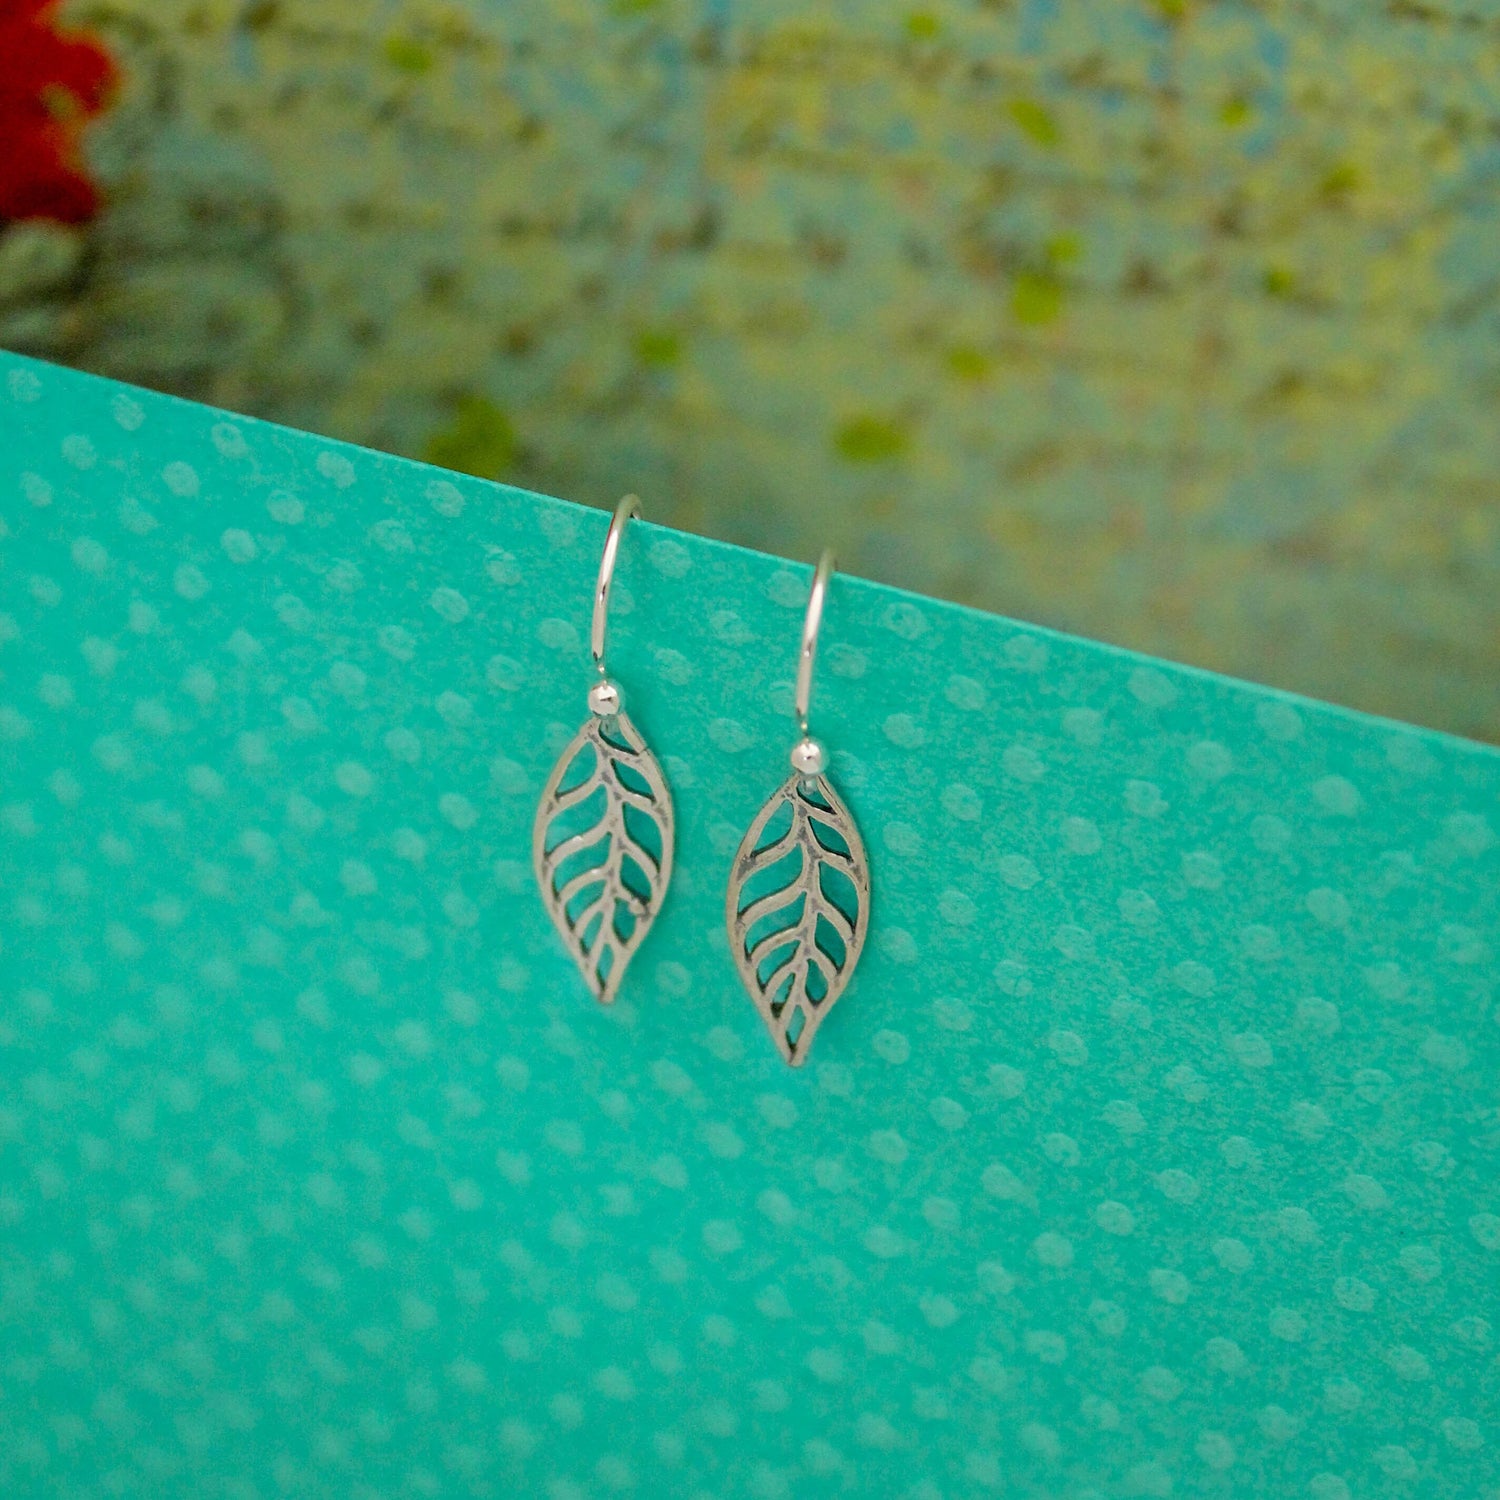 Leaf Charm Earrings, Botanical Leaf Earrings, Sterling Silver Earrings, Leaf Drop Earrings, Gifts for Her, Birthday Gift, Cute Silver Leaves